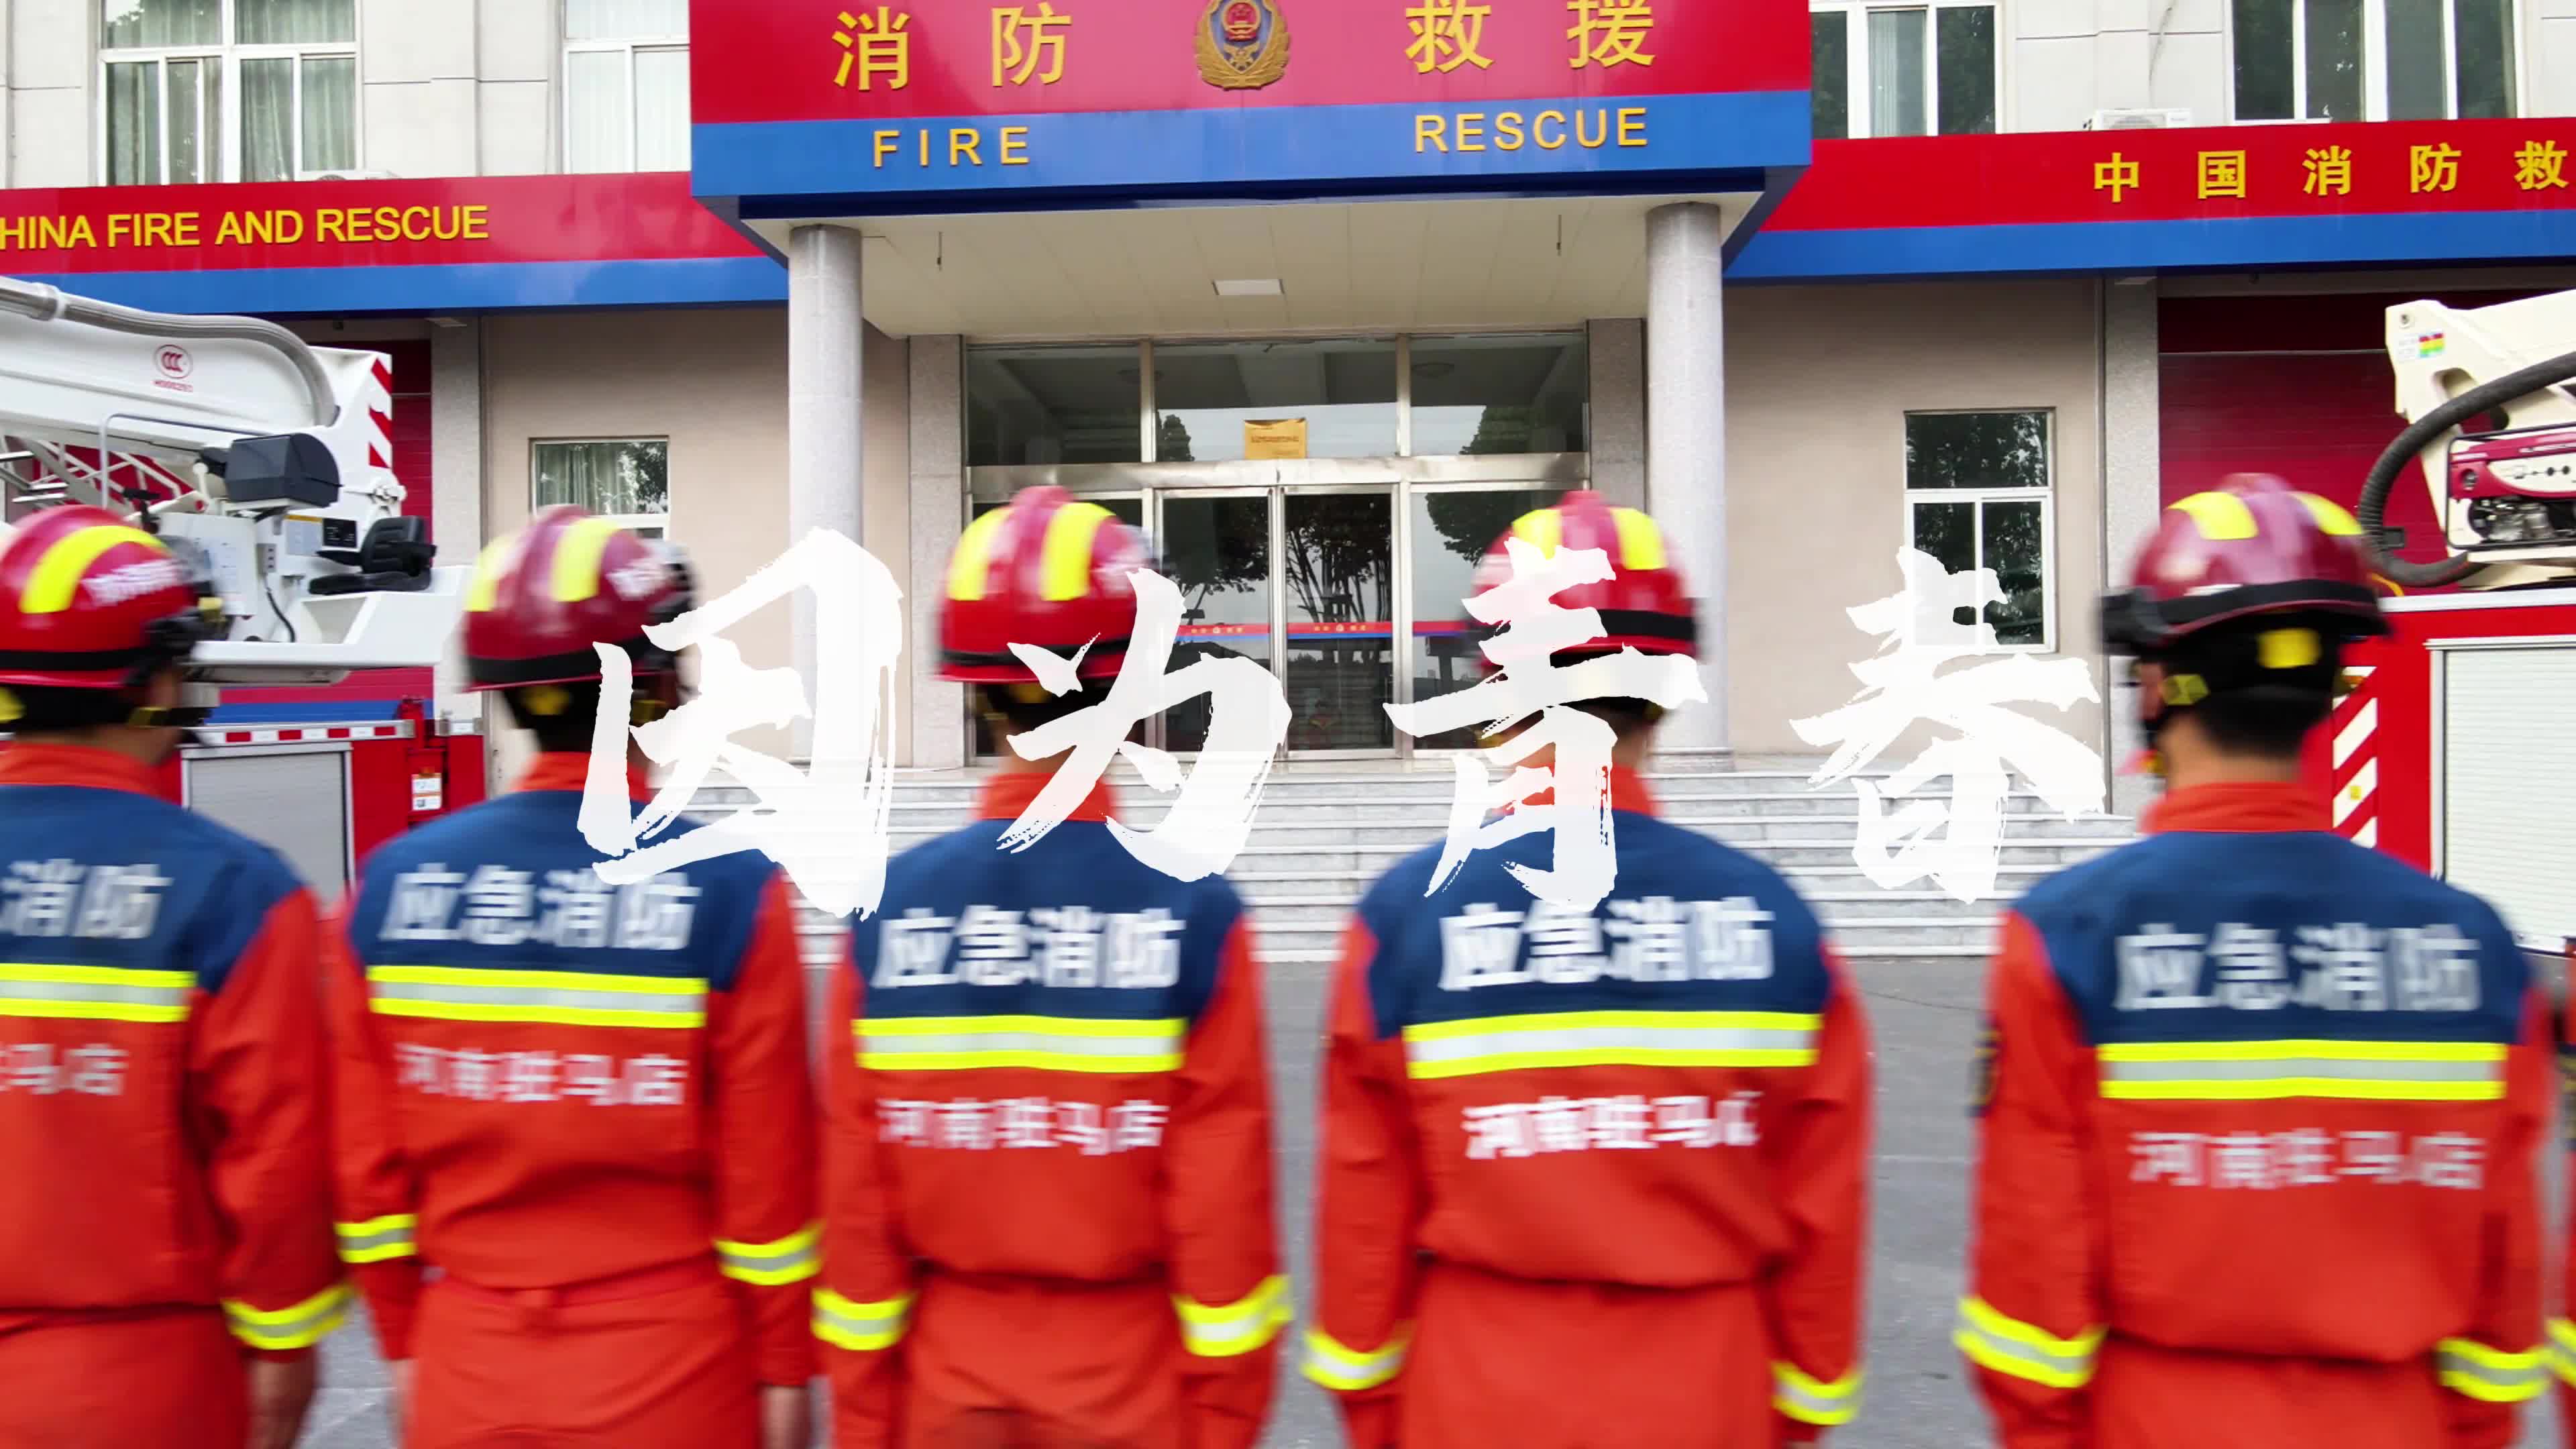 青春火焰蓝 奋斗正当时——驻马店市消防救援支队高新区大队